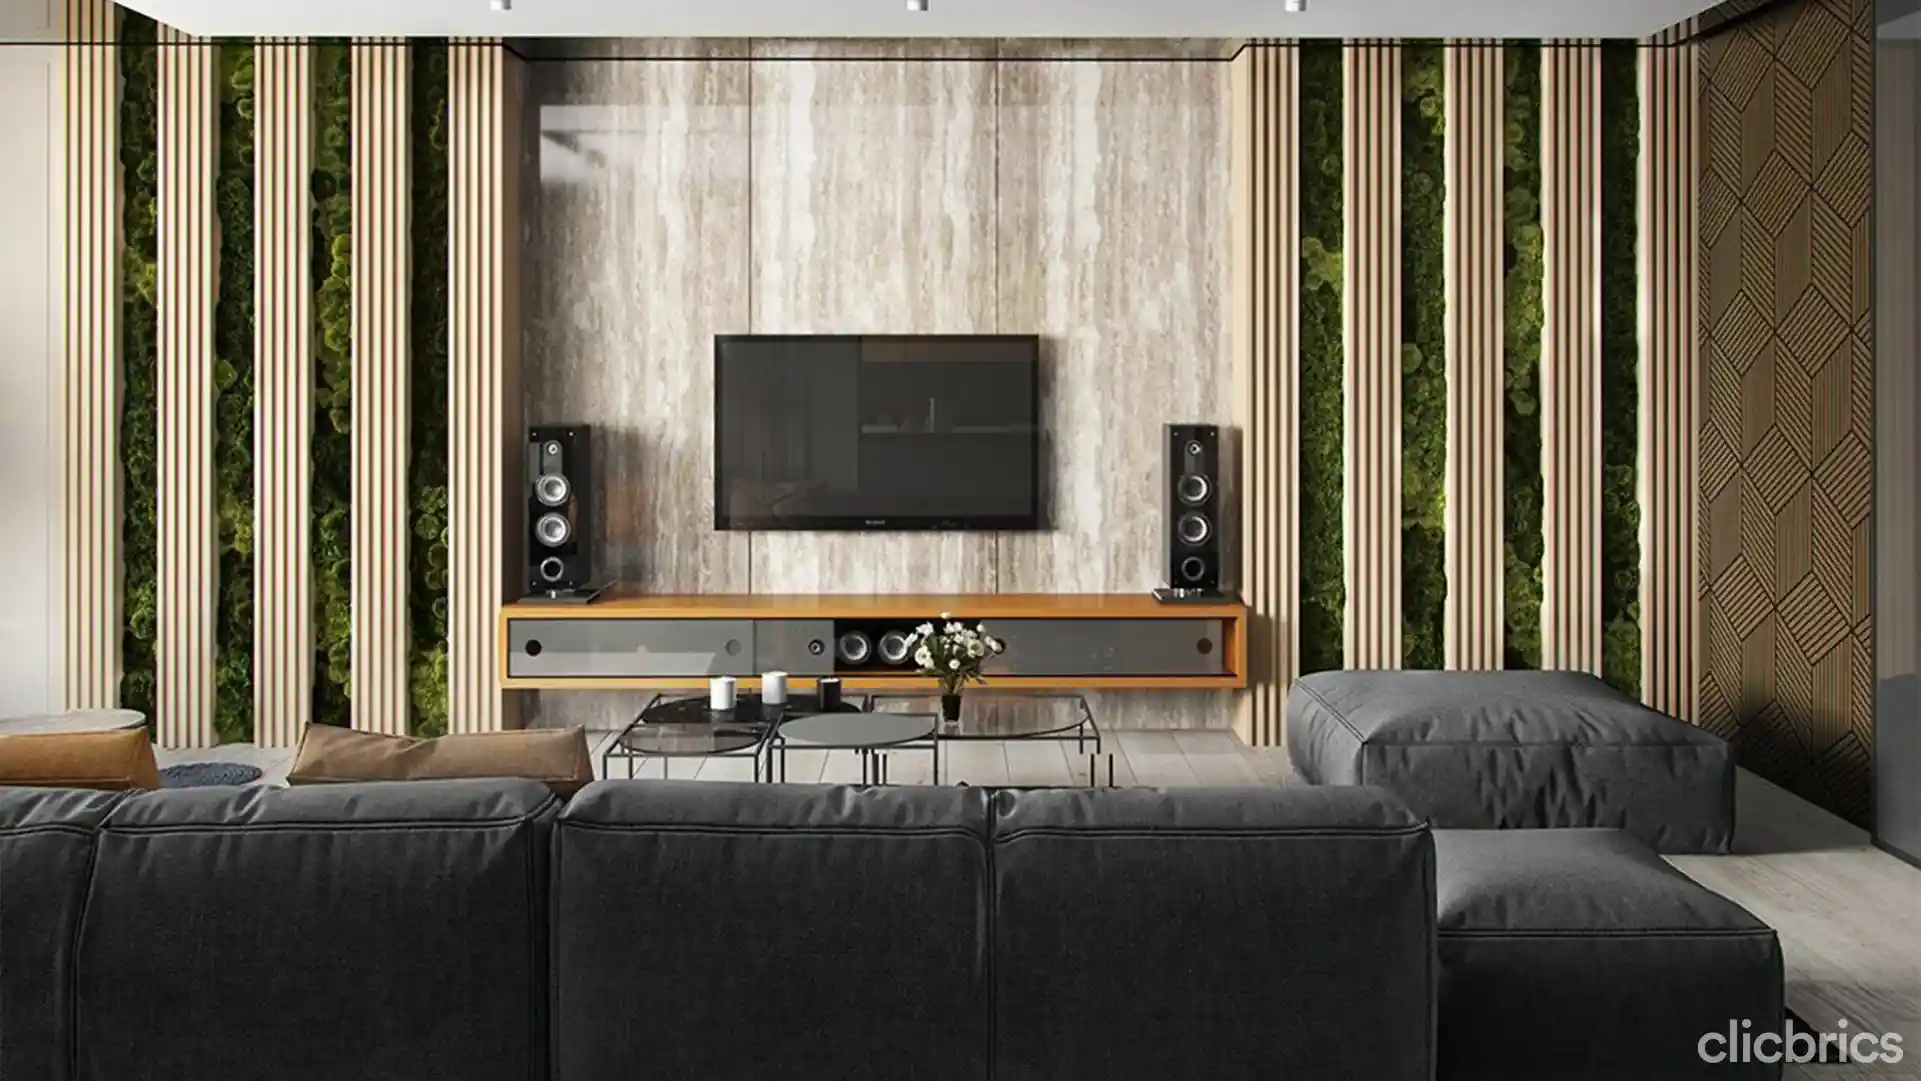 TVunit Design For Living Room